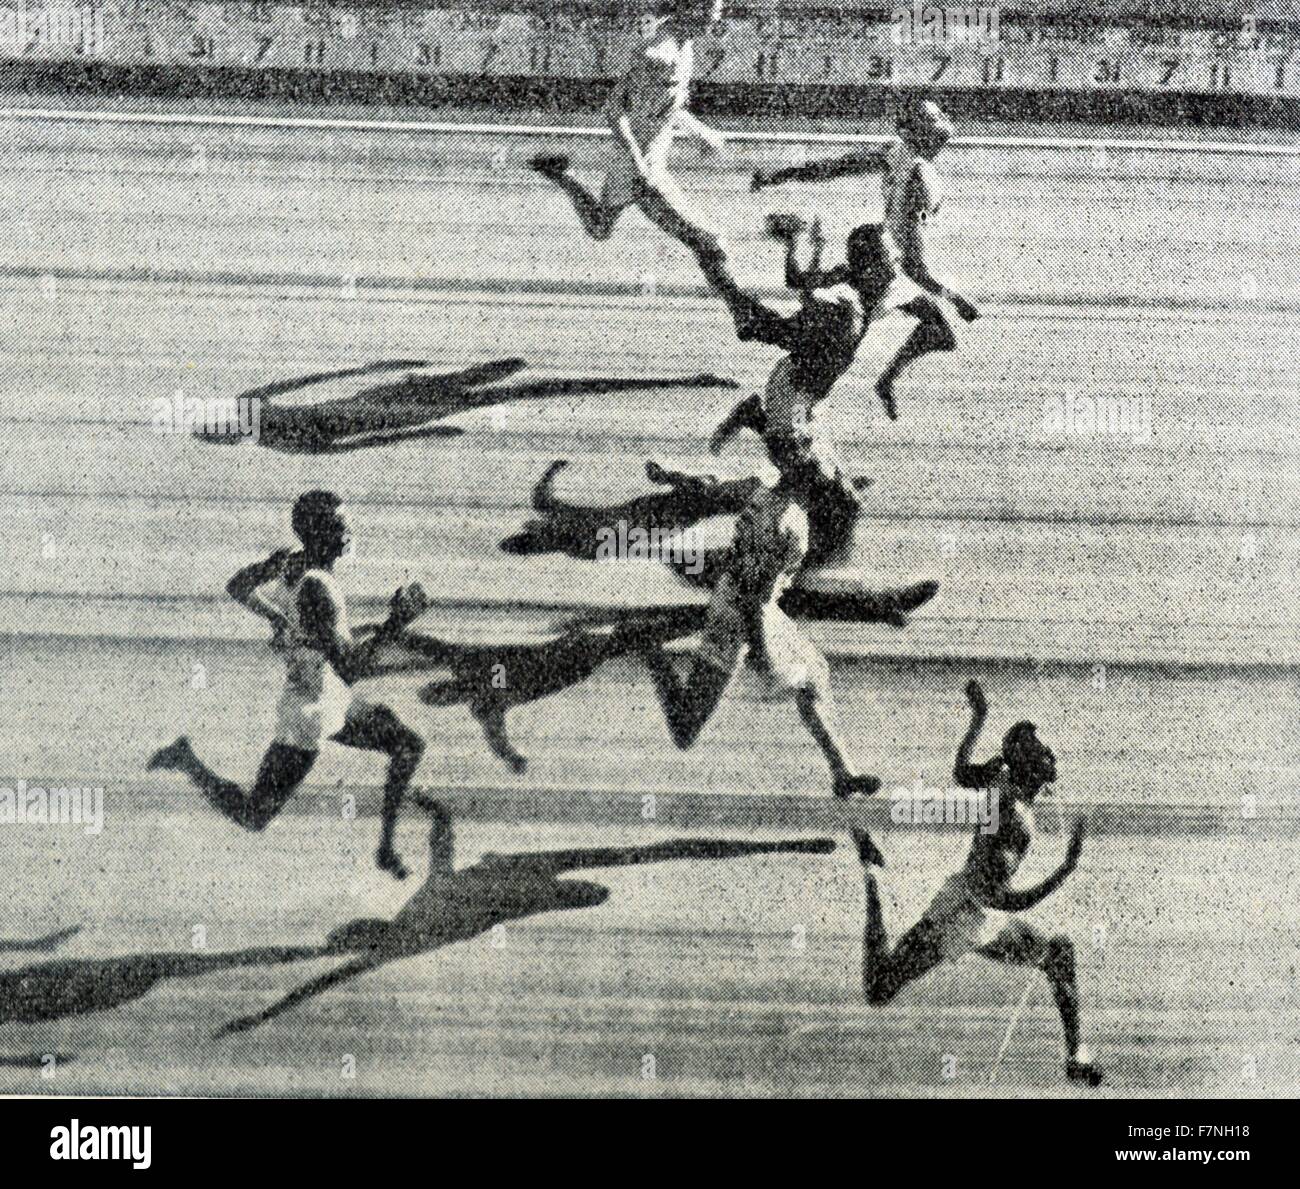 Fotografia di atleti impegnati nei giochi olimpici. Datata 1946 Foto Stock